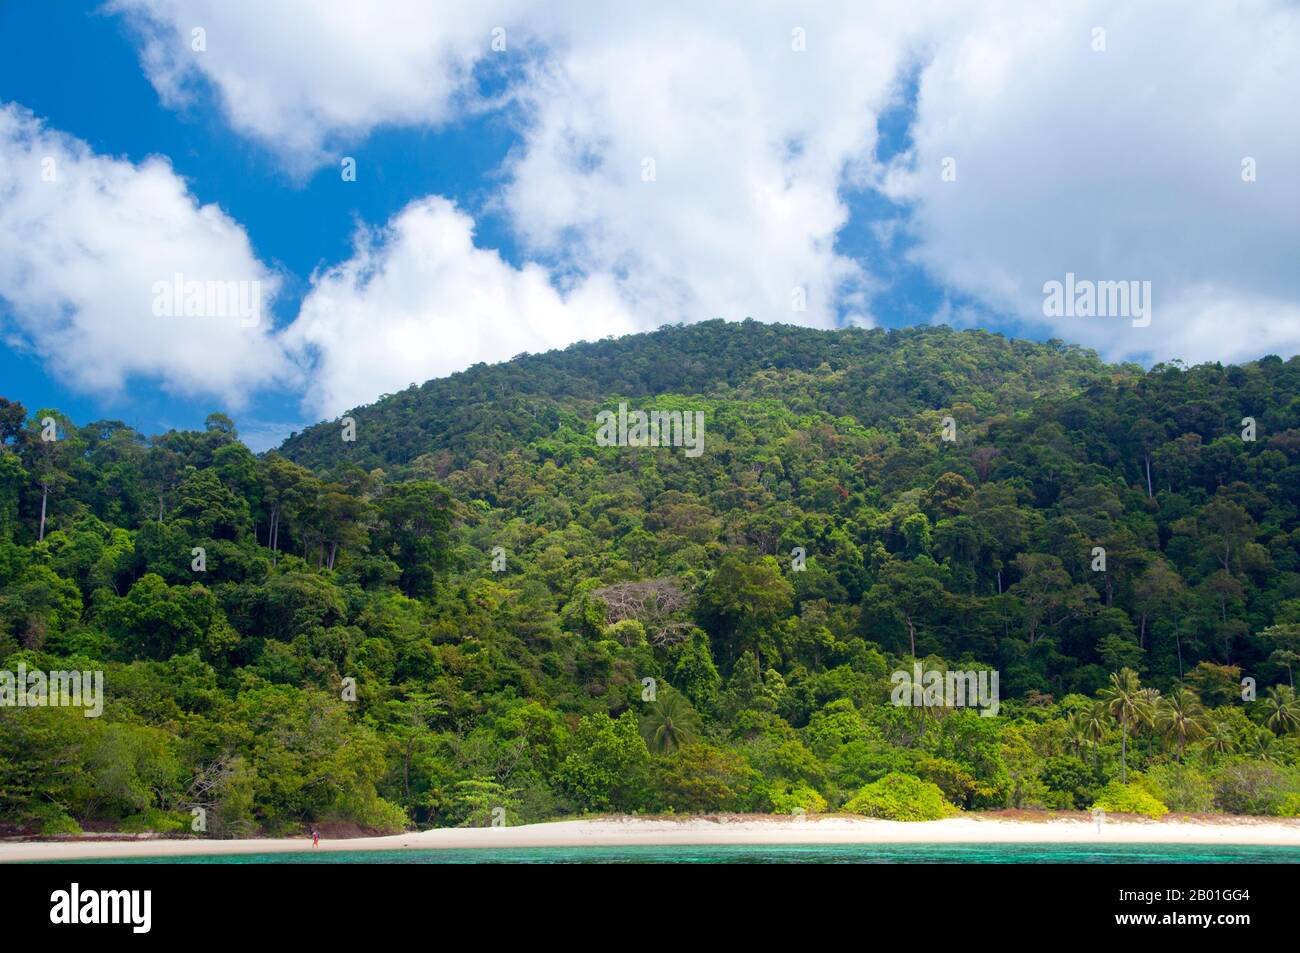 Ko Adang está alrededor de 30 km cuadrados (12 millas cuadradas) en área, y está casi completamente cubierta de selva tropical. La isla es famosa por sus aguas cristalinas, sus playas de cuarzo y sus magníficos arrecifes de coral, que proporcionan un hábitat para bancos de peces de colores brillantes y una gran cantidad de otras criaturas marinas. El interior de Ko Adang es también muy prístino, con varias cascadas que caen desde las alturas centrales (703 m3t34w o 2,300 pies), más notablemente Nam Tok Chon Salat. El Parque Nacional Marino de Ko Tarutao consta de 51 islas en dos grupos principales esparcidos por el Mar de Mar de Mar de Mar de Mar de Mar de Mar de Mar de Mar de Mar de Mar de Mar de Mar de Mar de Mar de Foto de stock